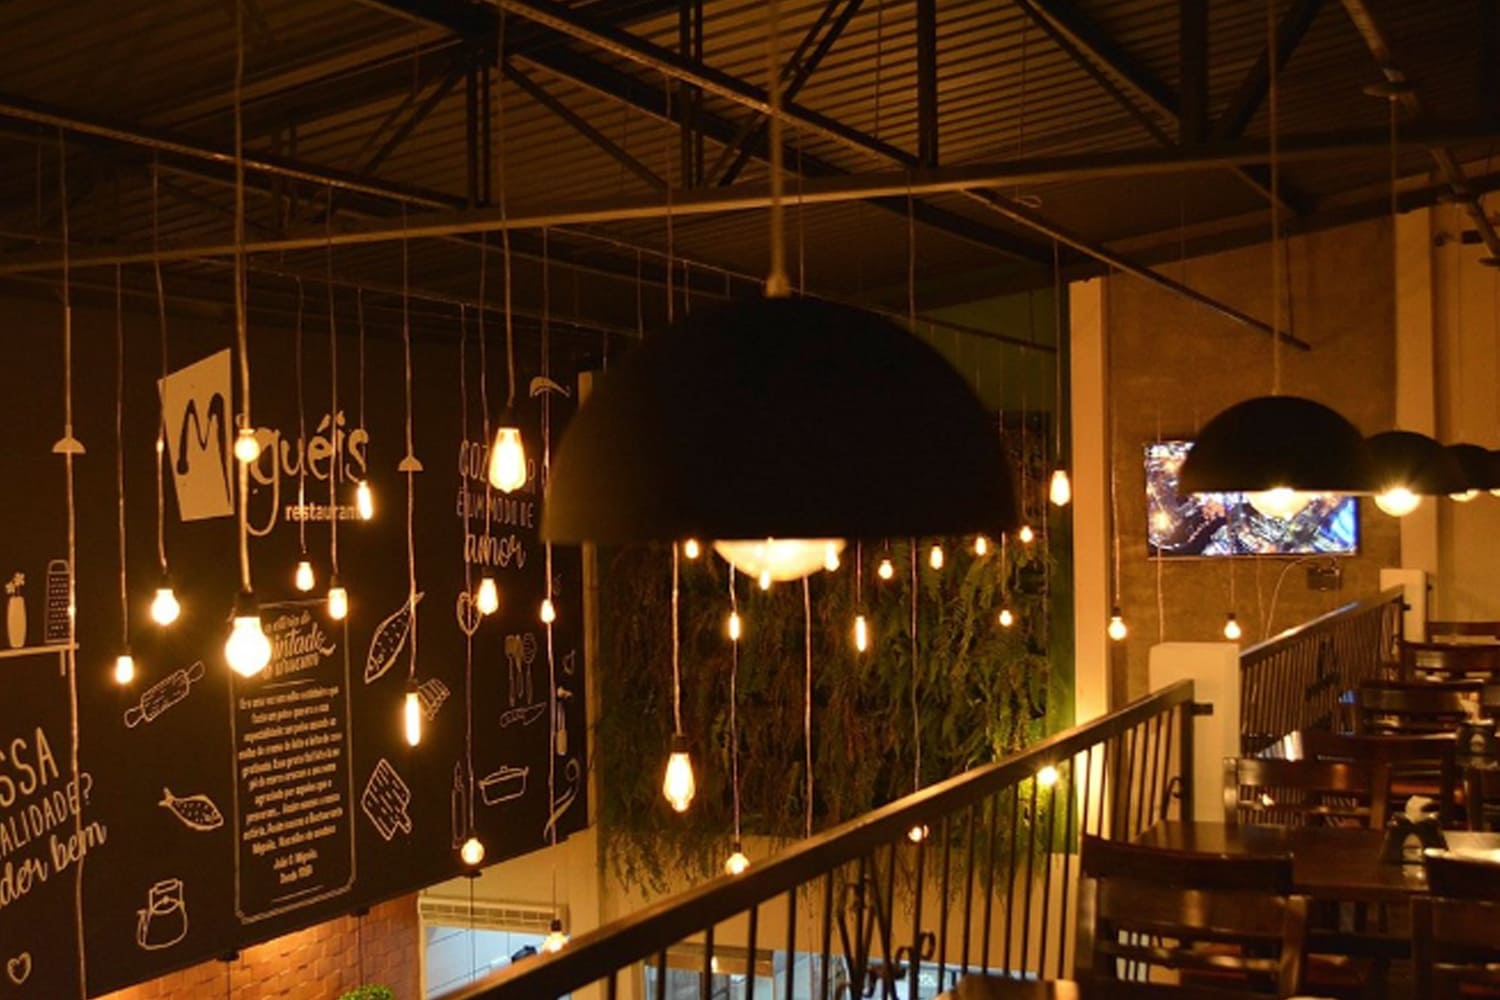 Lugares para comer em Corumbá: os melhores restaurantes | Restaurante Migueis | Conexão123